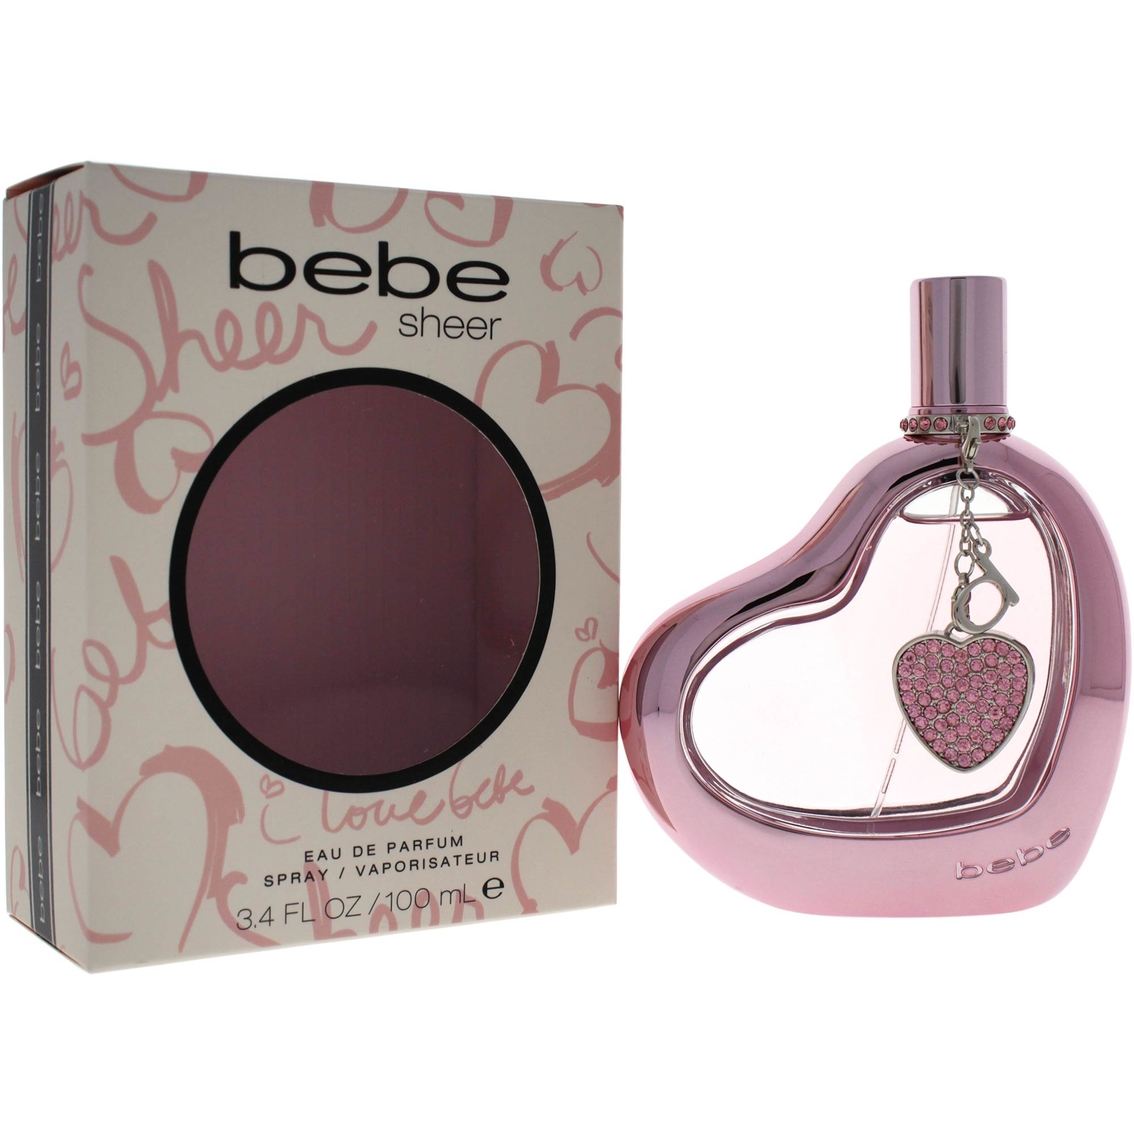 bebe Sheer for Women 3.4 oz. Eau de Parfum Spray - Image 2 of 2